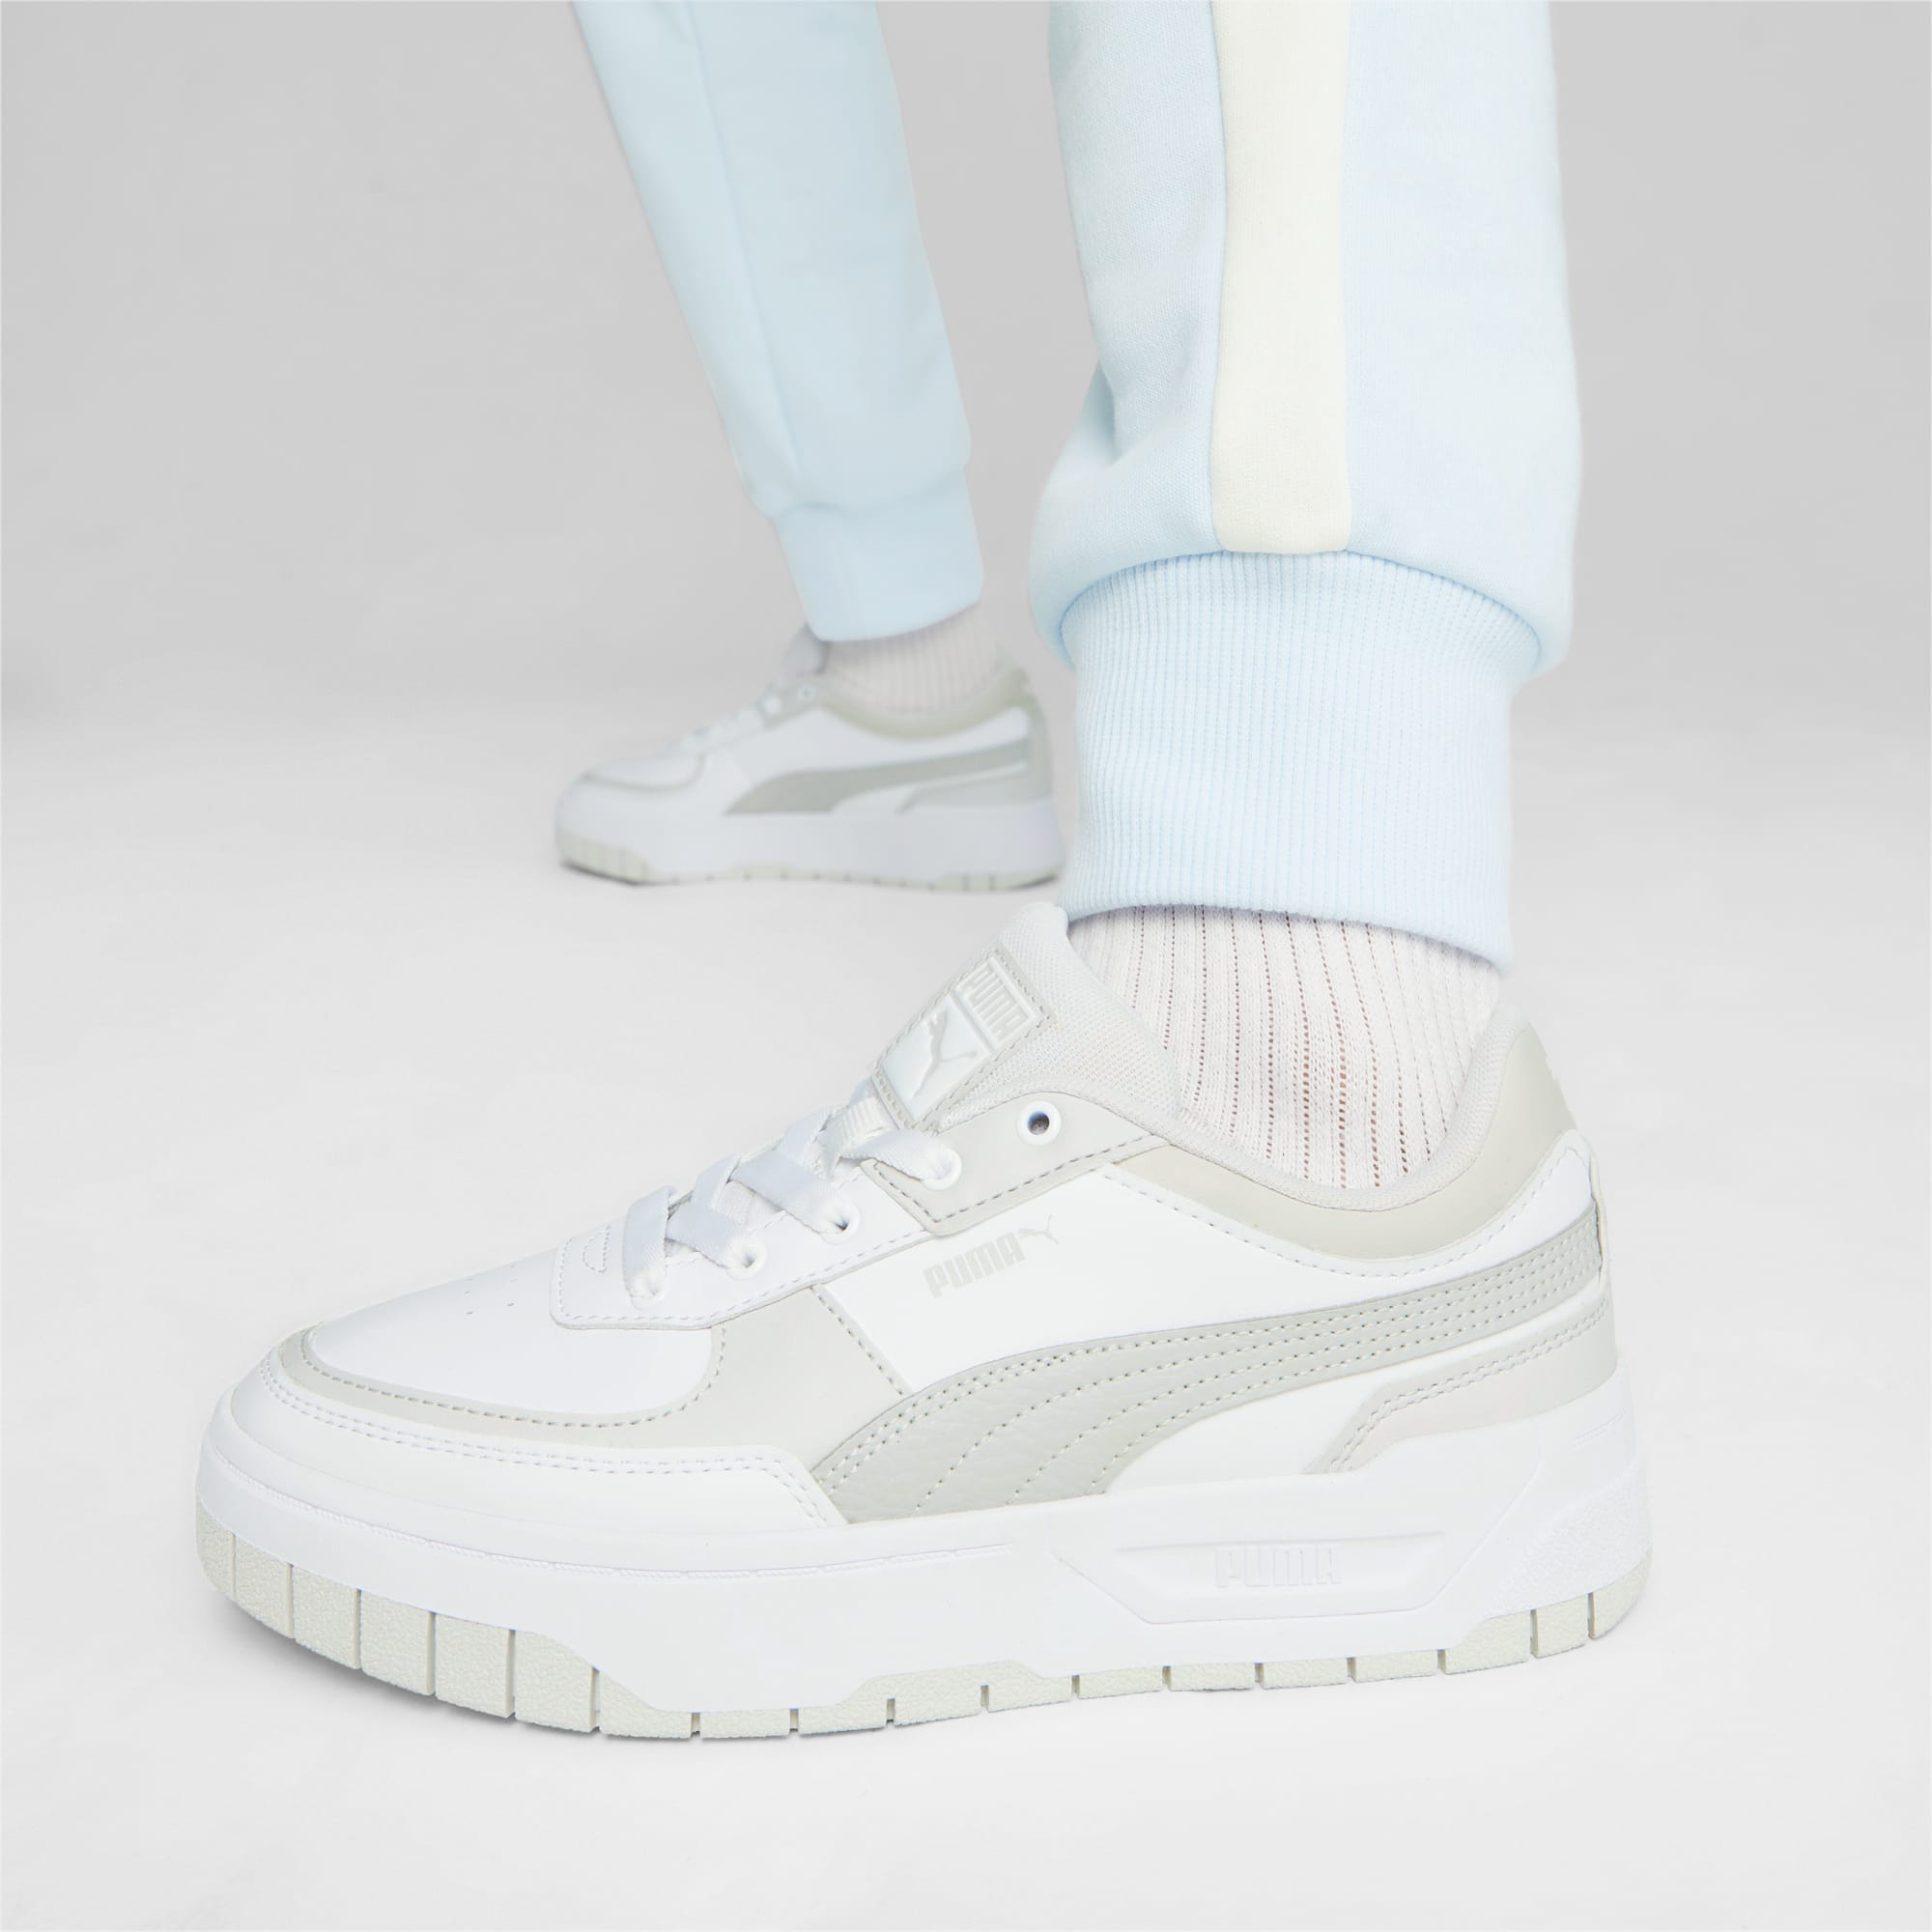 PUMA Chaussure Sneakers En Cuir Cali Dream Femme, Blanc/Gris